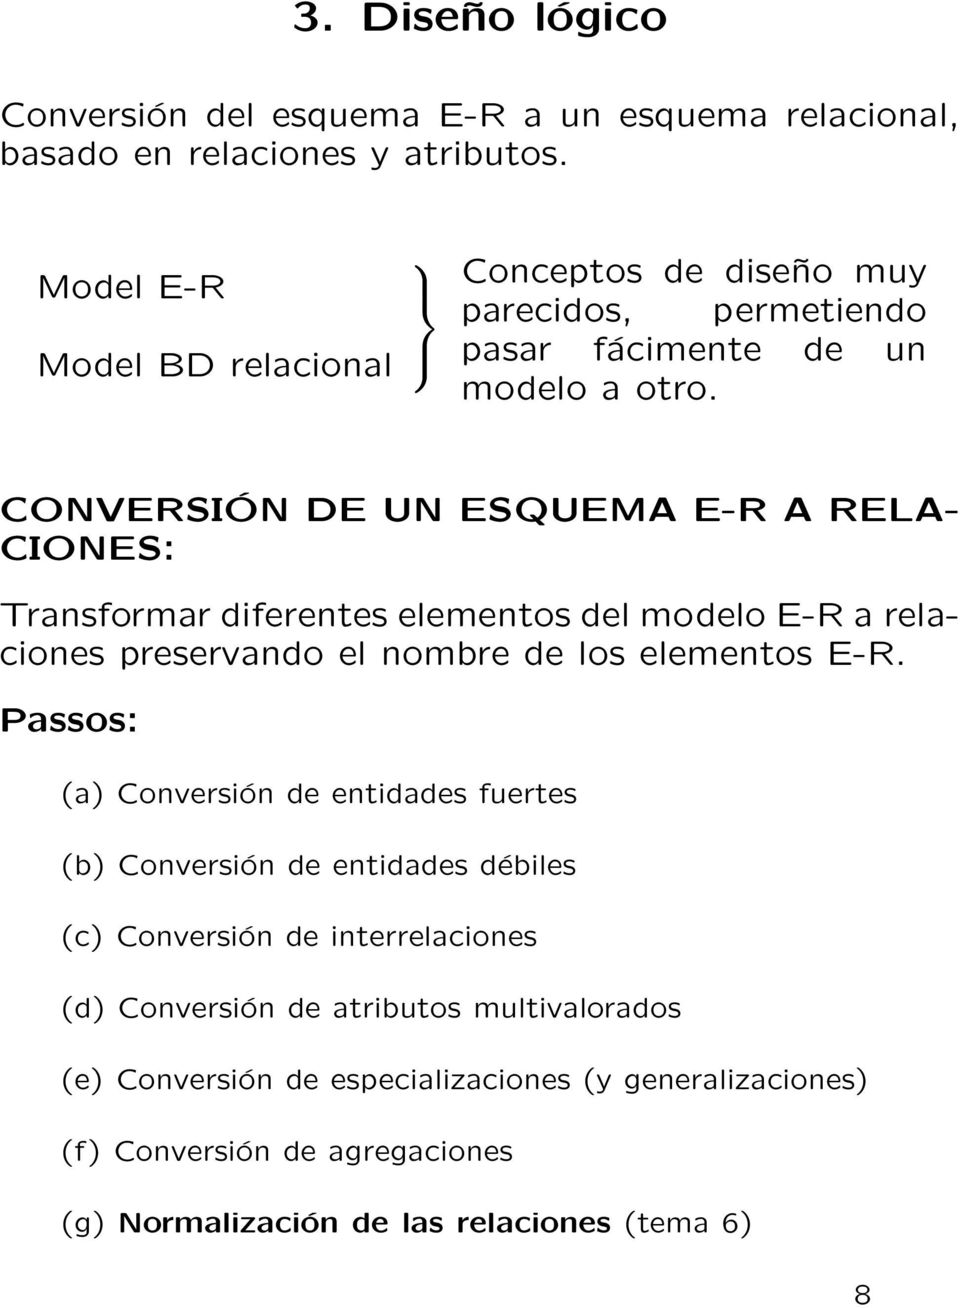 CONVERSIÓN DE UN ESQUEMA E-R A RELA- CIONES: Transformar diferentes elementos del modelo E-R a relaciones preservando el nombre de los elementos E-R.